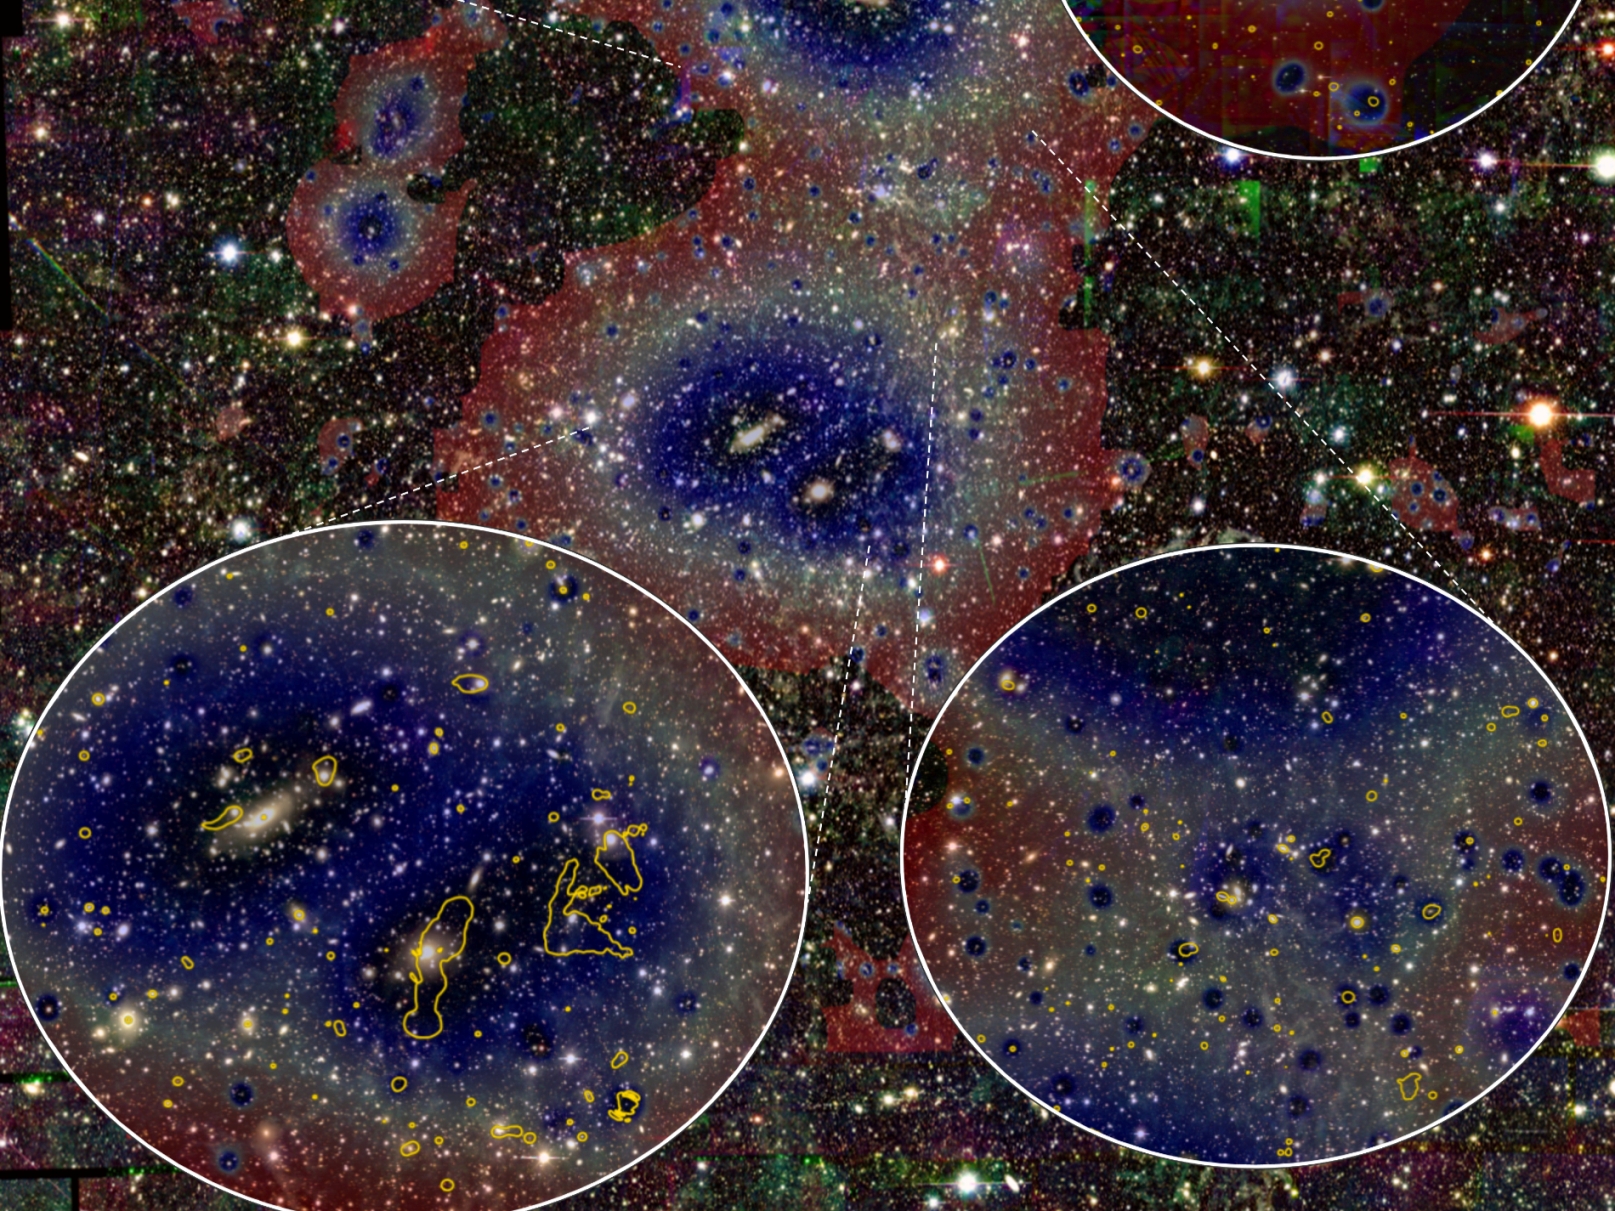 Image dans le visible du système Abell 3391/95 prise avec la caméra DECam. Les images de&nbsp;eRosita (plus sombre = densité de gaz plus élevée) et celles des contours radio (jaune) du télescope Askap&nbsp;sont superposés.&nbsp;© Reiprich et al., Astronomy &amp; Astrophysics